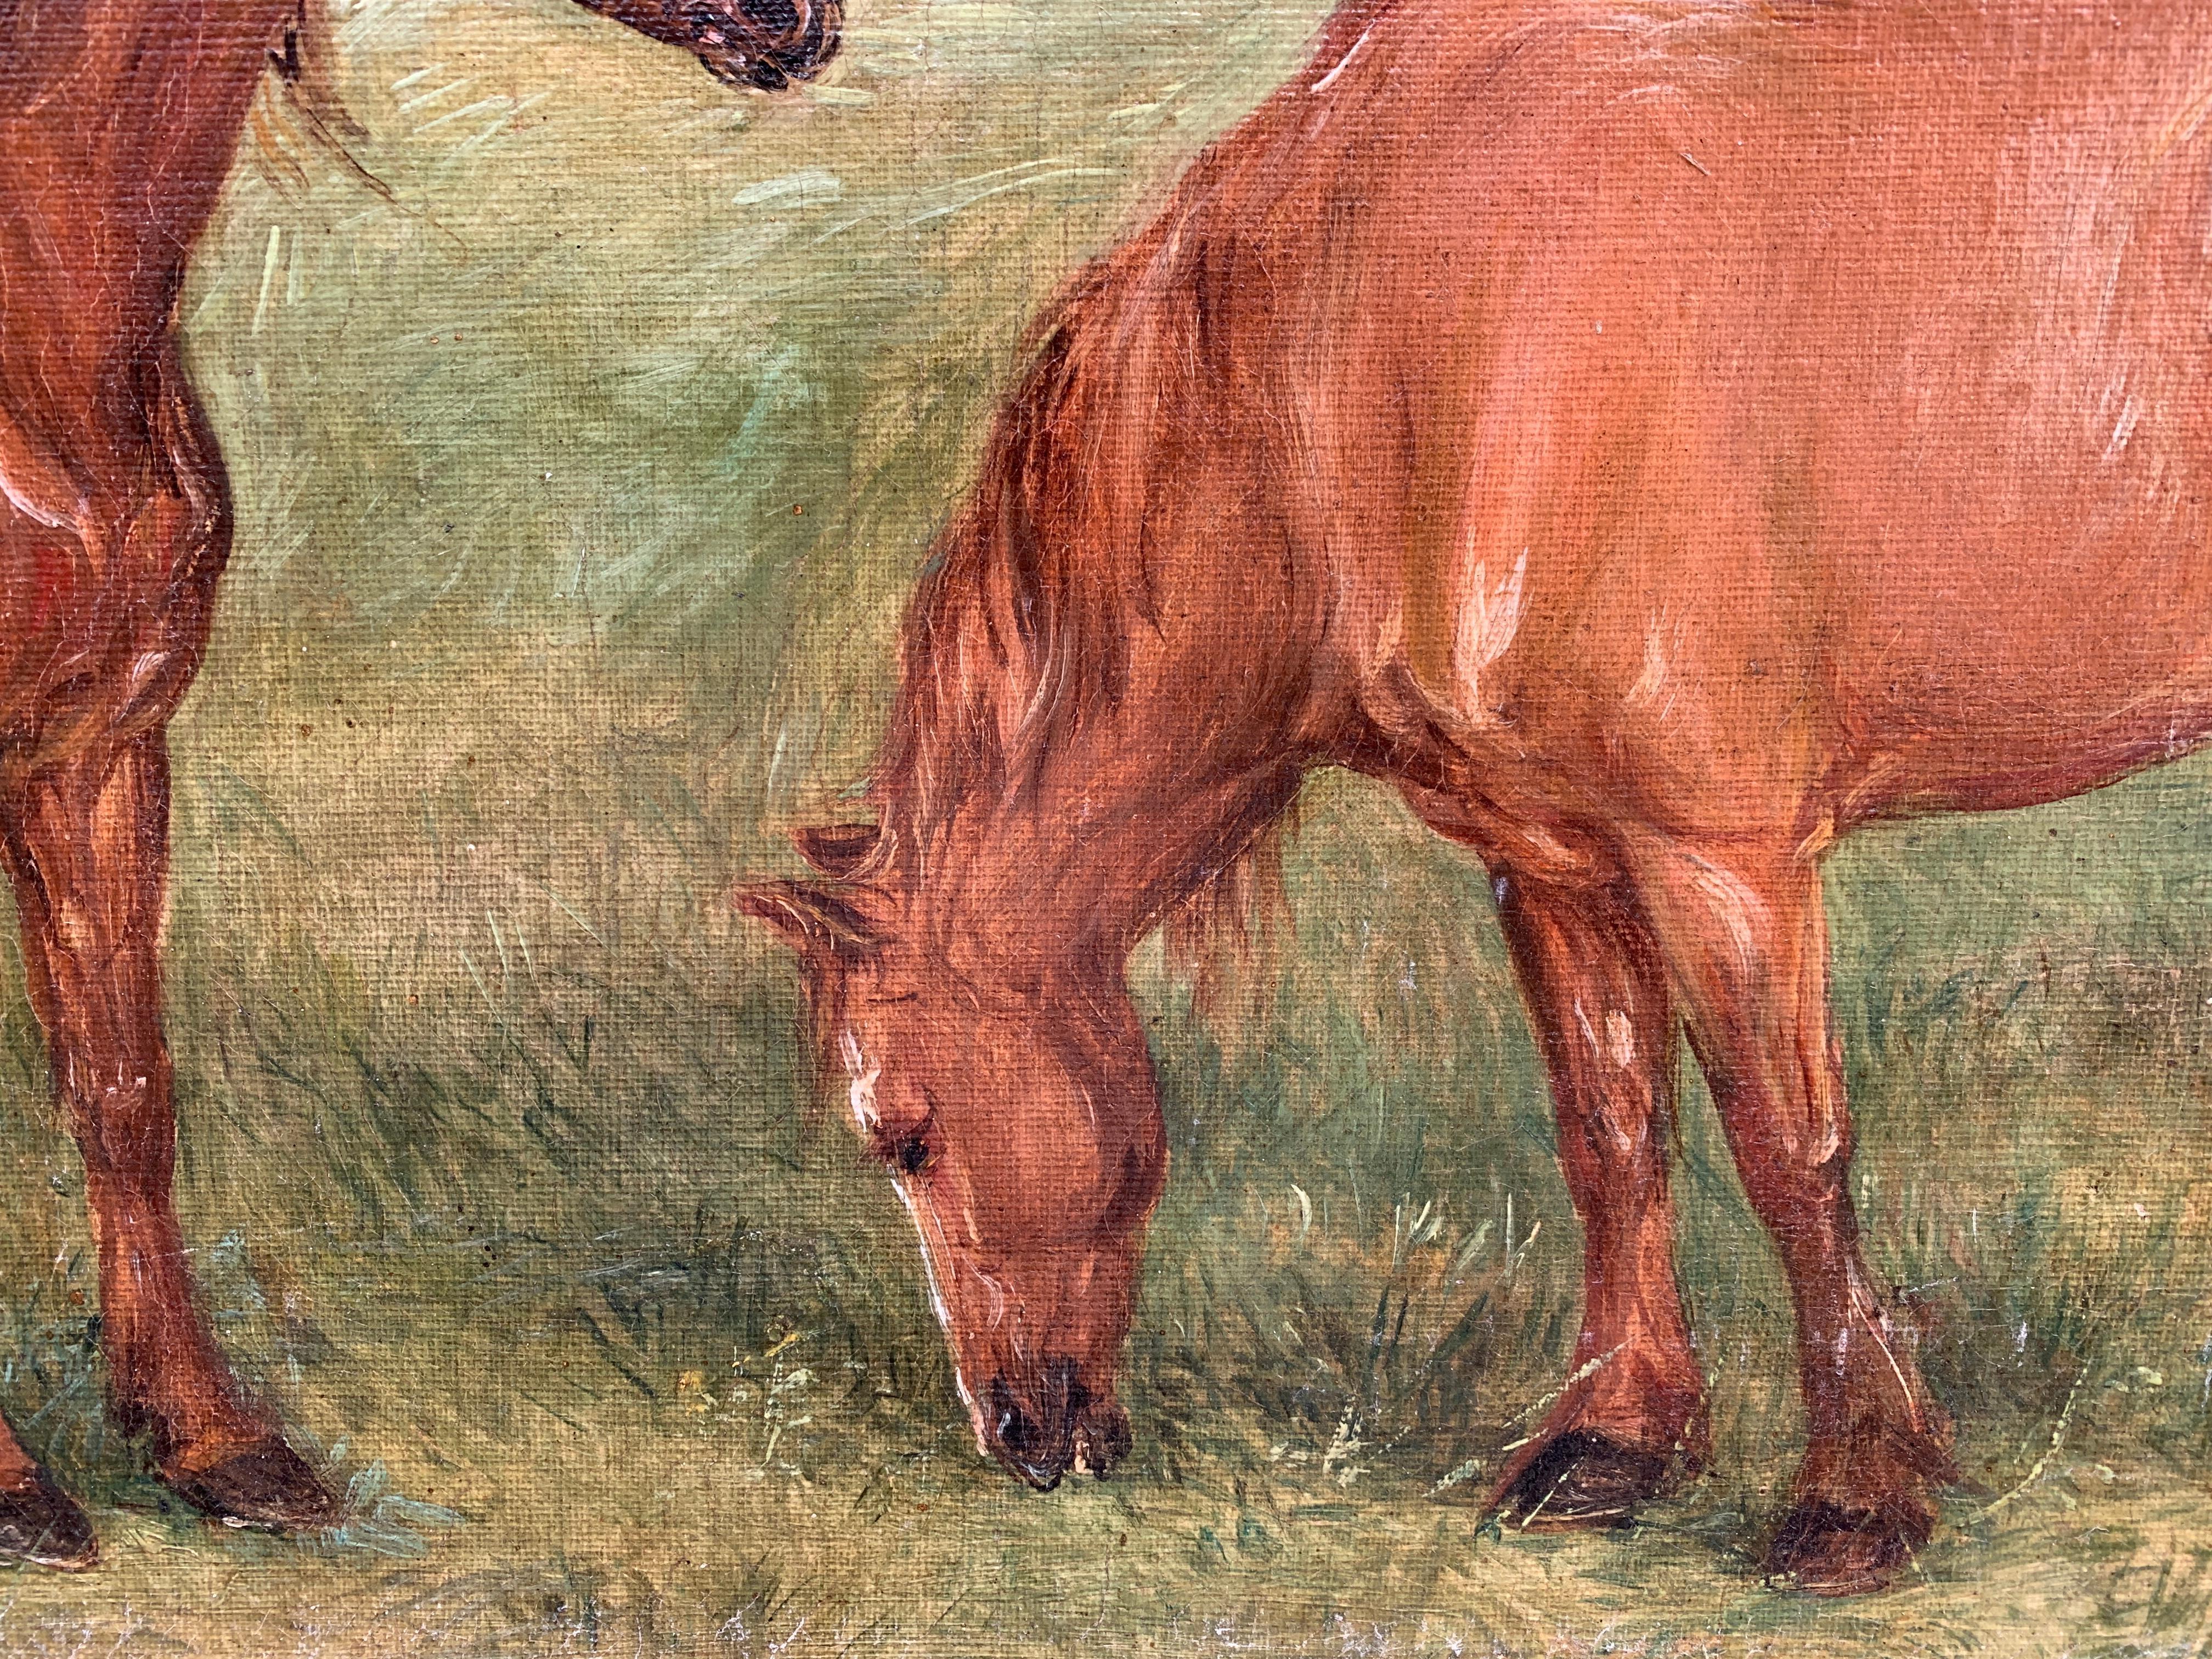 Porträt in Öl aus dem frühen 20. Jahrhundert von Shire- oder Clydesdale-Pferden in einer Landschaft.

Edwin begann seine künstlerische Laufbahn mit einem Studium an der Royal Academy of Art, wo er im Alter von 24 Jahren eine Silbermedaille für sein